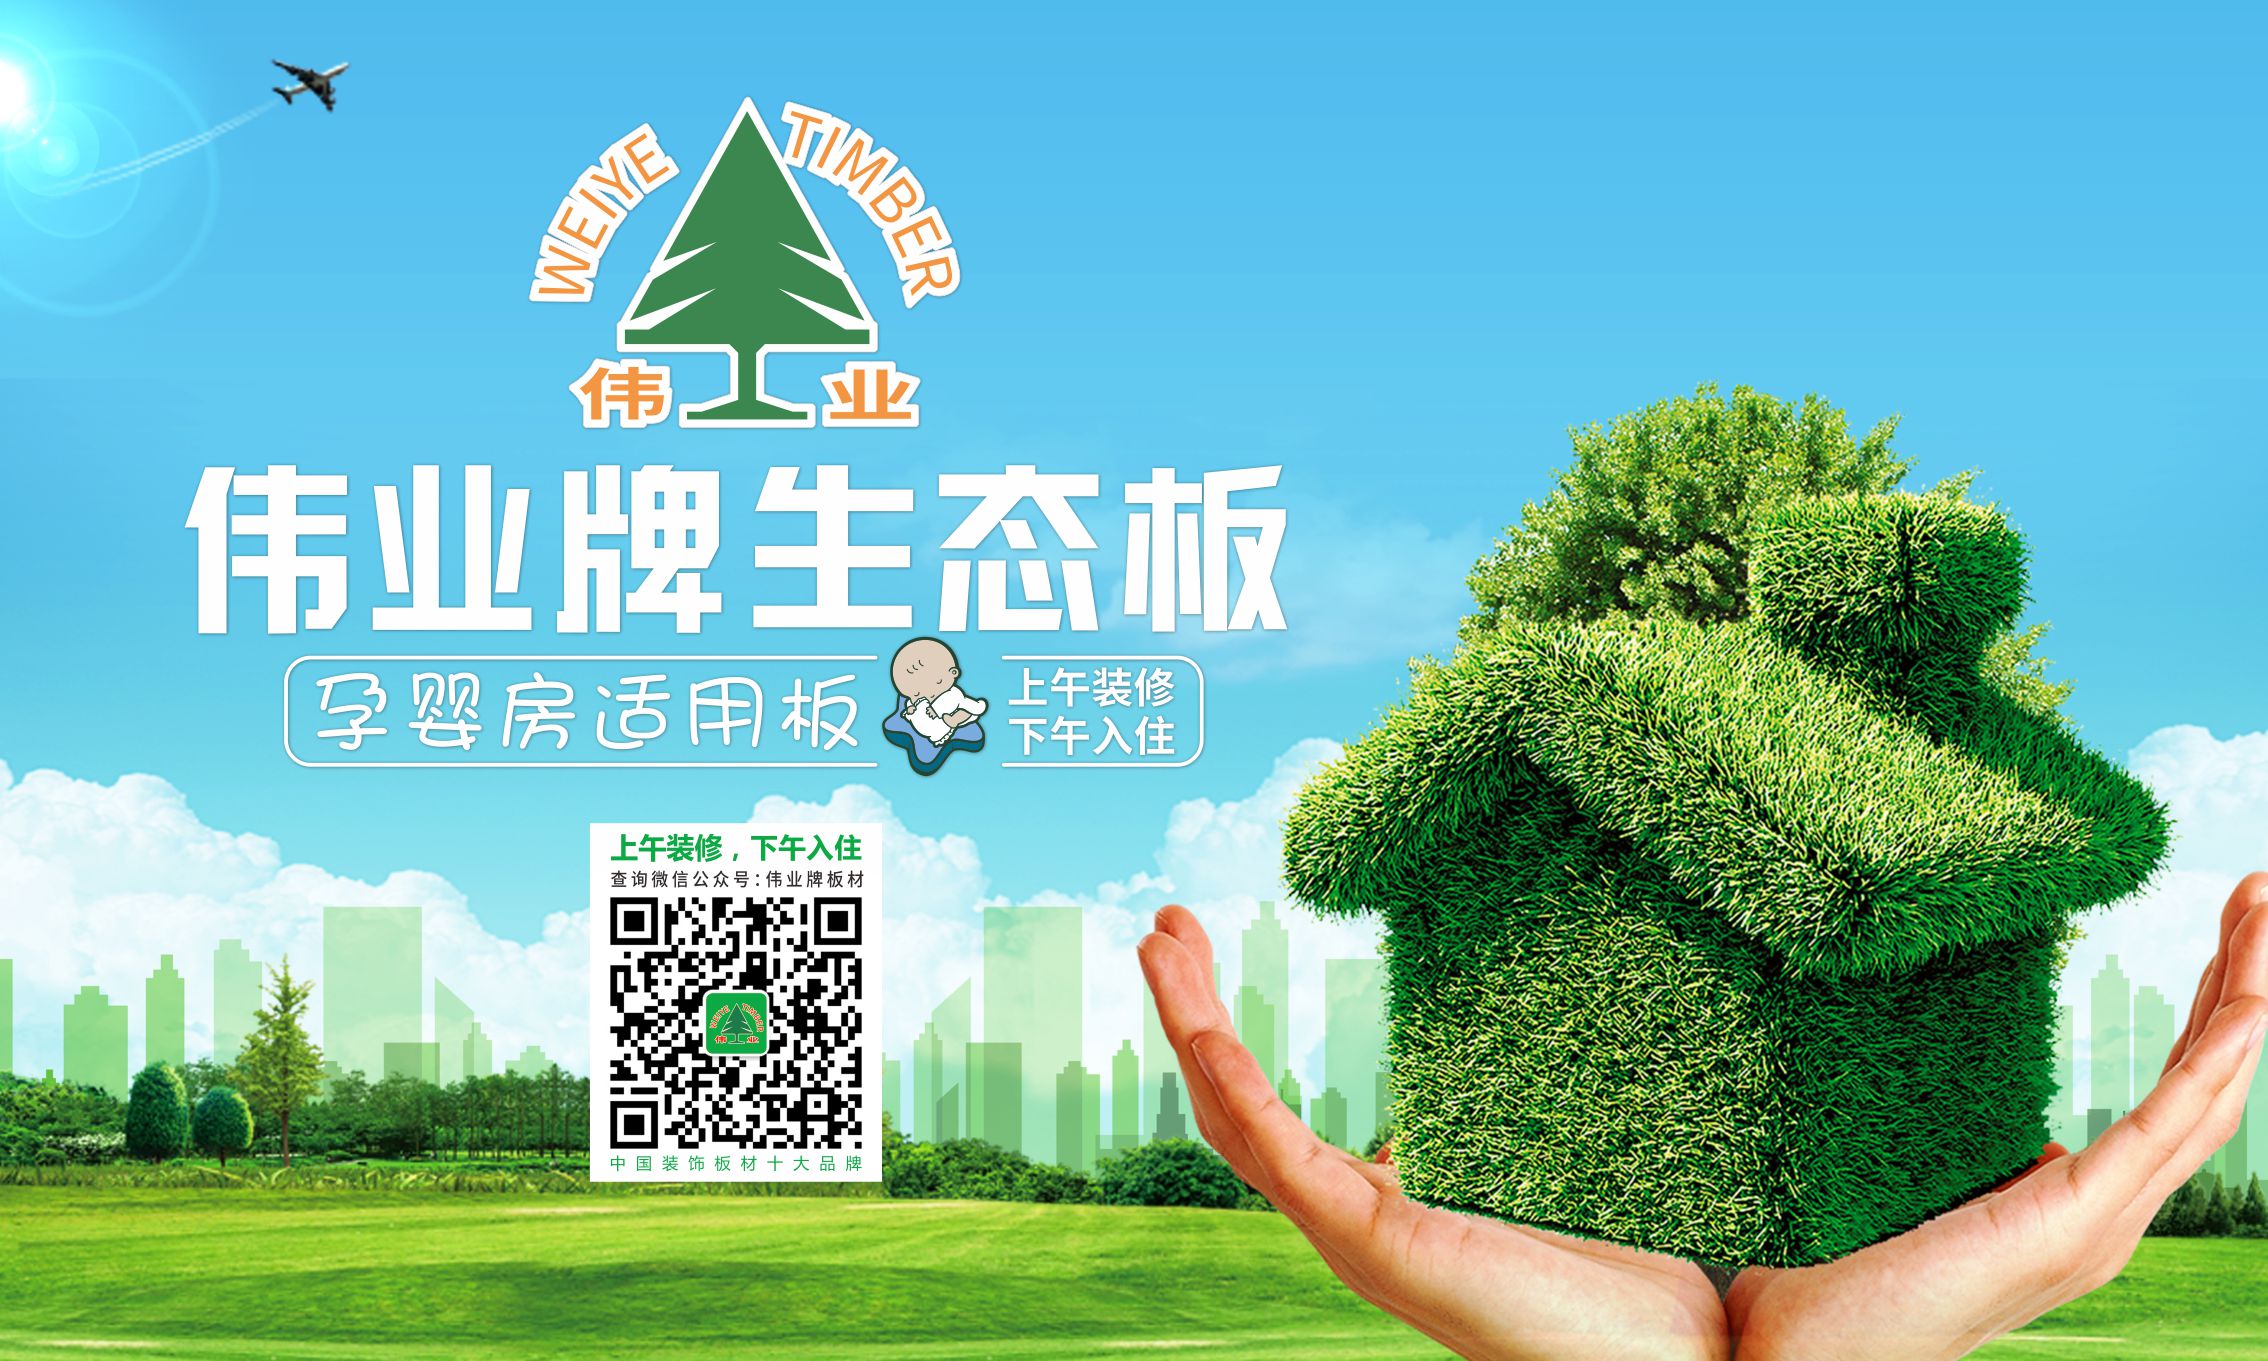 华南地区|有什么知名生态板品牌值得推荐